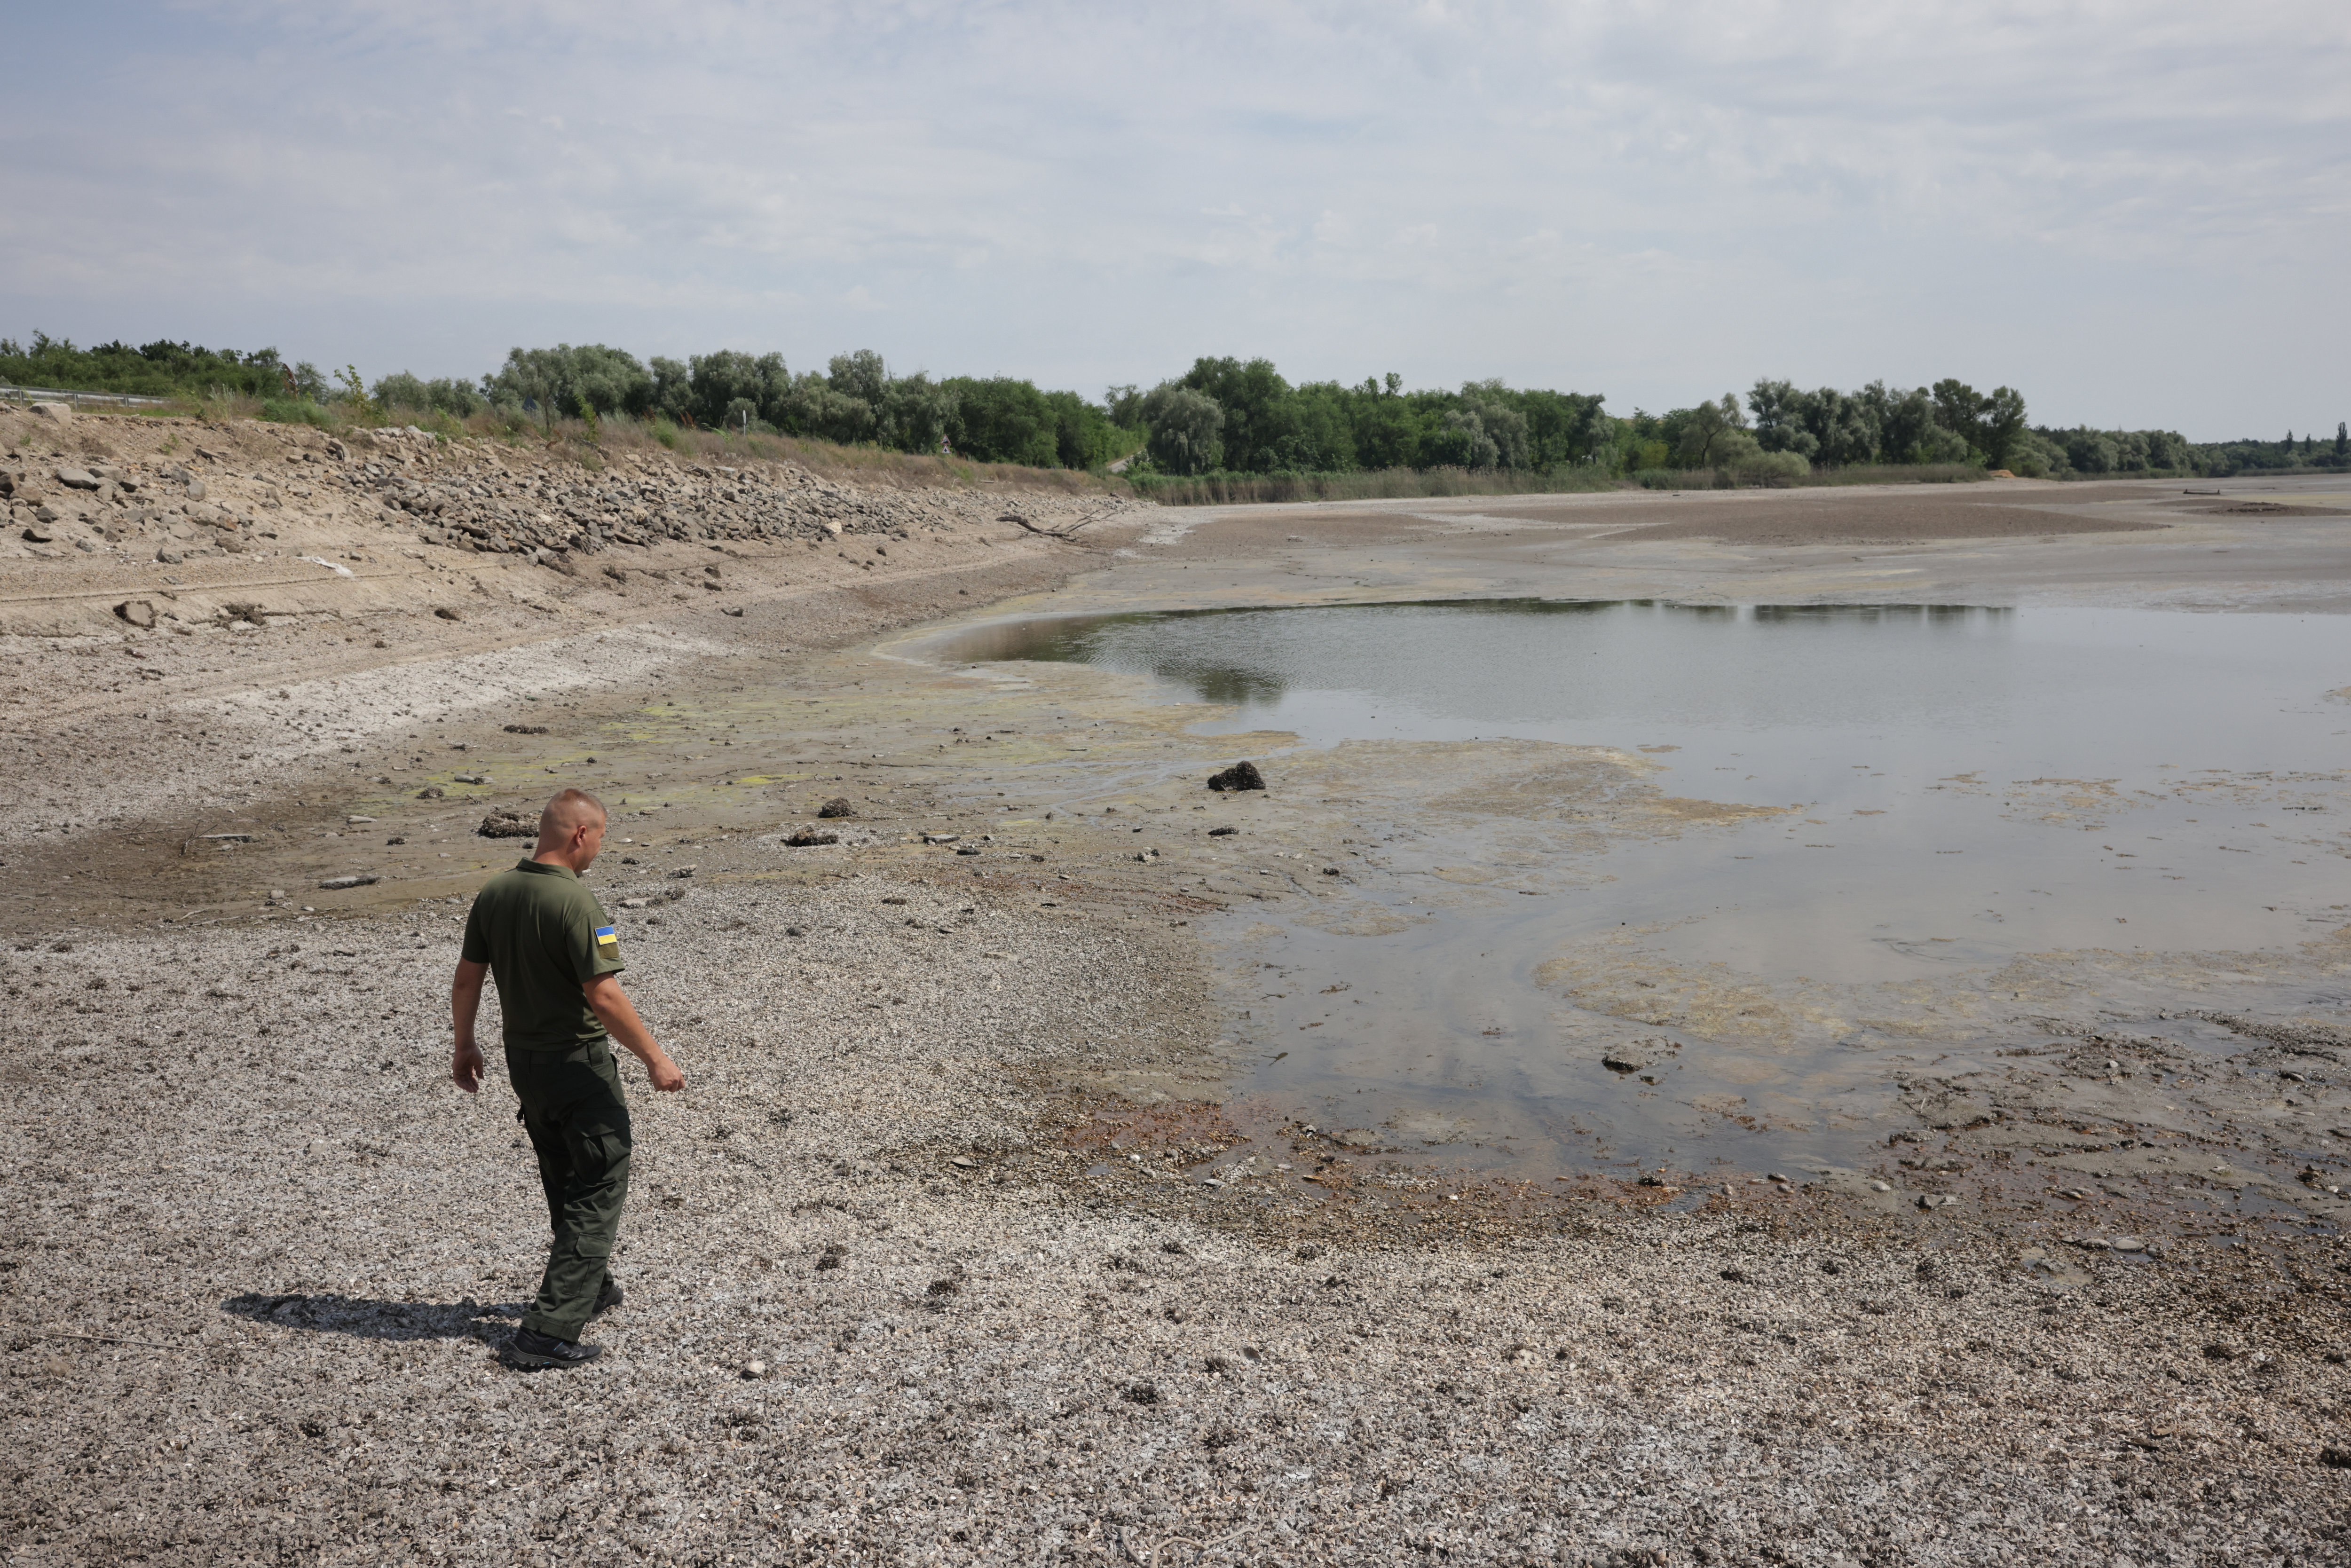 La réserve naturelle de Kamianska Sich, dans la région de Kherson, n'est plus qu'une zone sinistrée. L'explosion du barrage de Nova Kakhovka a fait baisser drastiquement le niveau du Dniepr. LP/Philippe de Poulpiquet